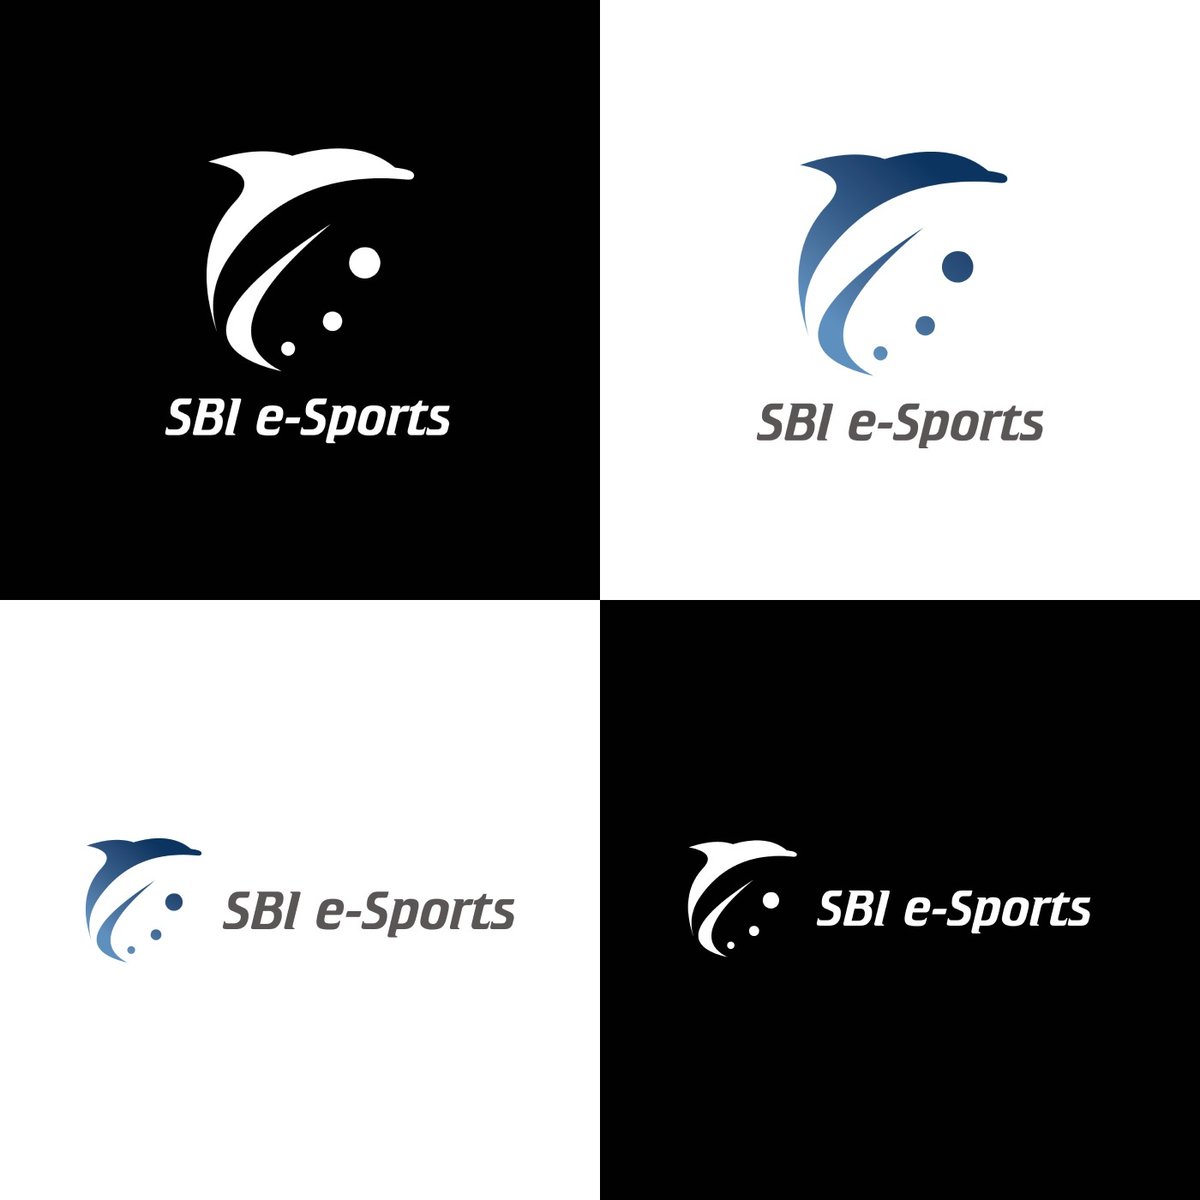 Sbi E Sports 株 弊社eスポーツチームのチームロゴ初公開 素敵なロゴに仕上げて頂きました Eスポーツ Sbi